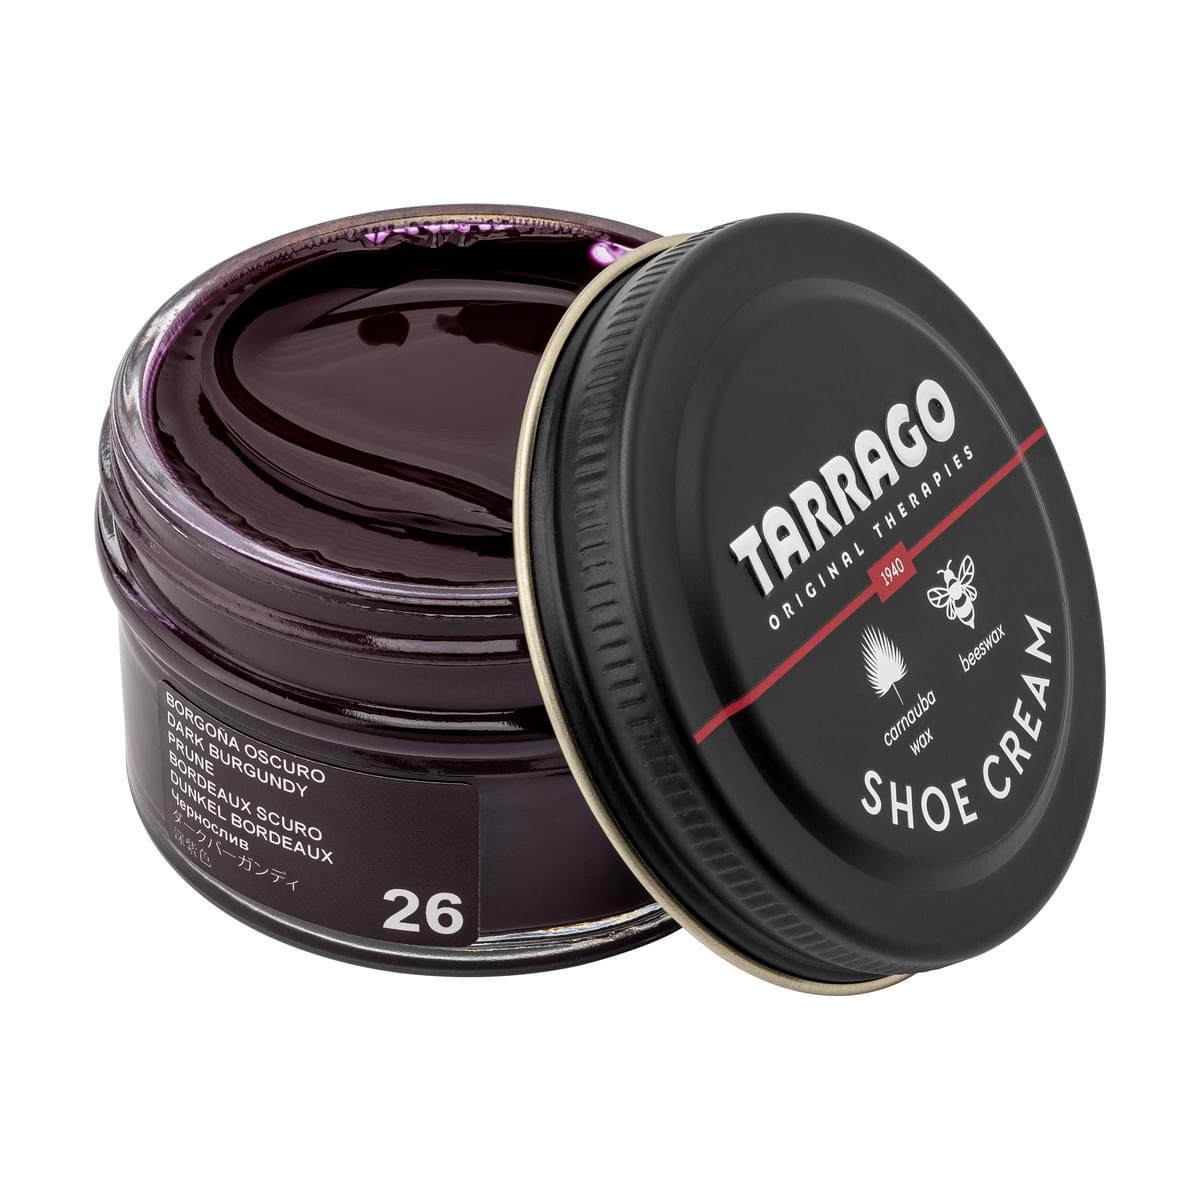 Tarrago Shoe Cream  - Dark Burgundy - 26